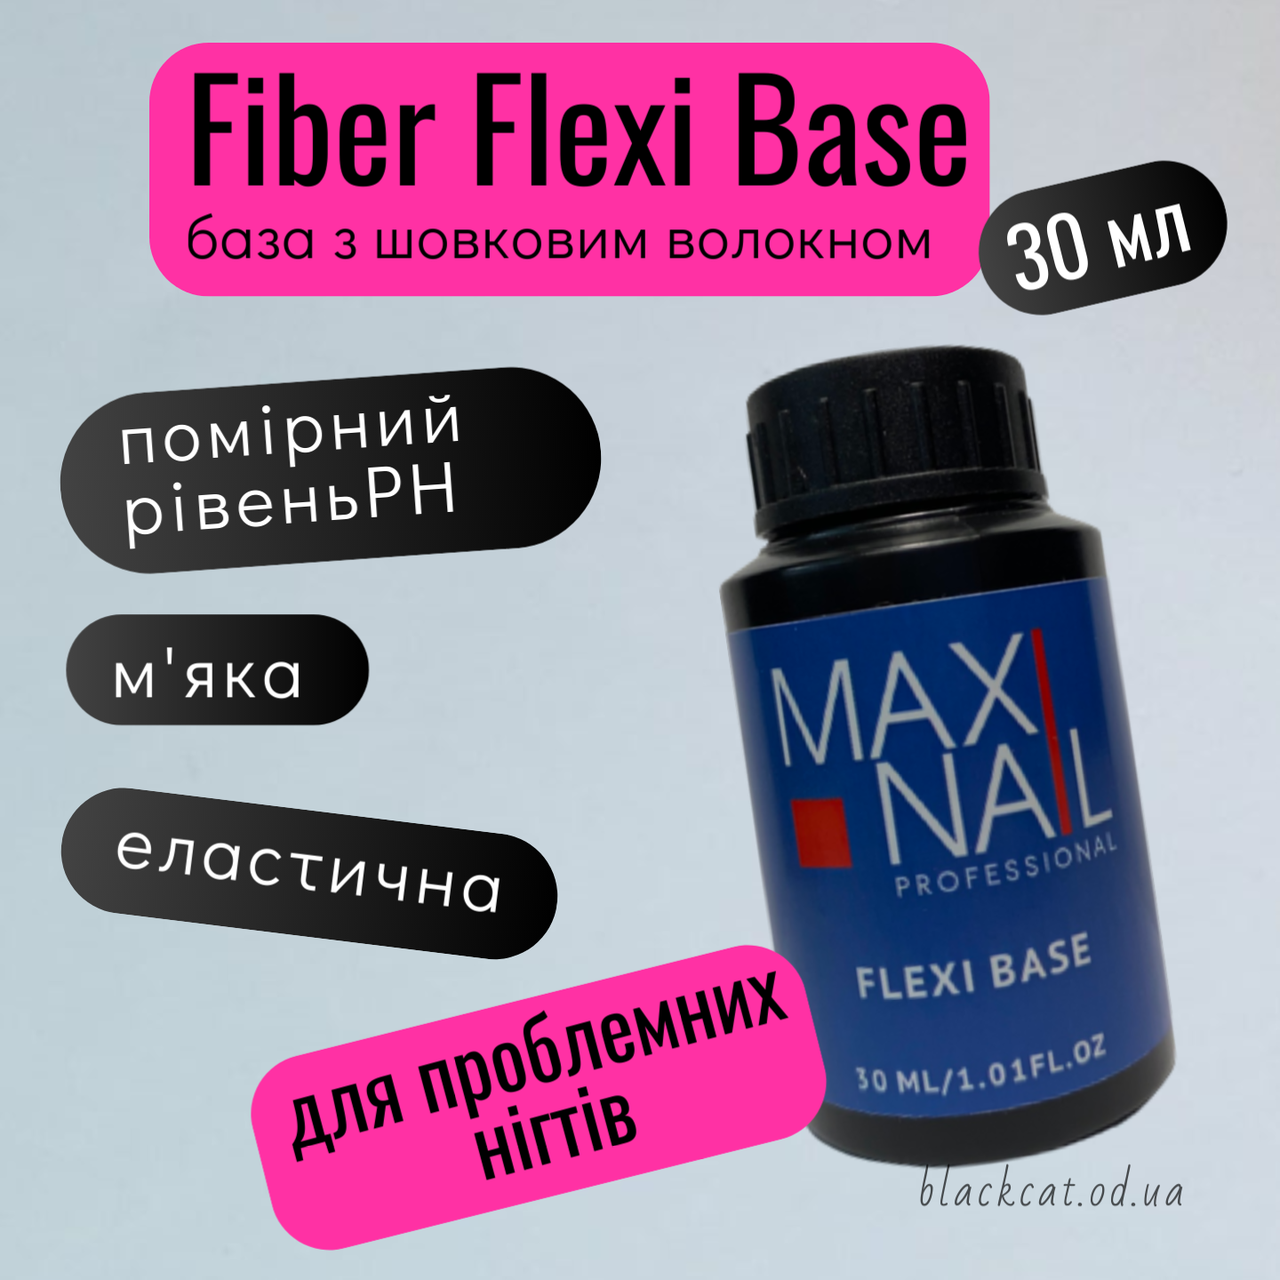 Файбер база з шовком для тонких, ламких нігтів Fiber Flexi Base MAXI NAIL  30 ml